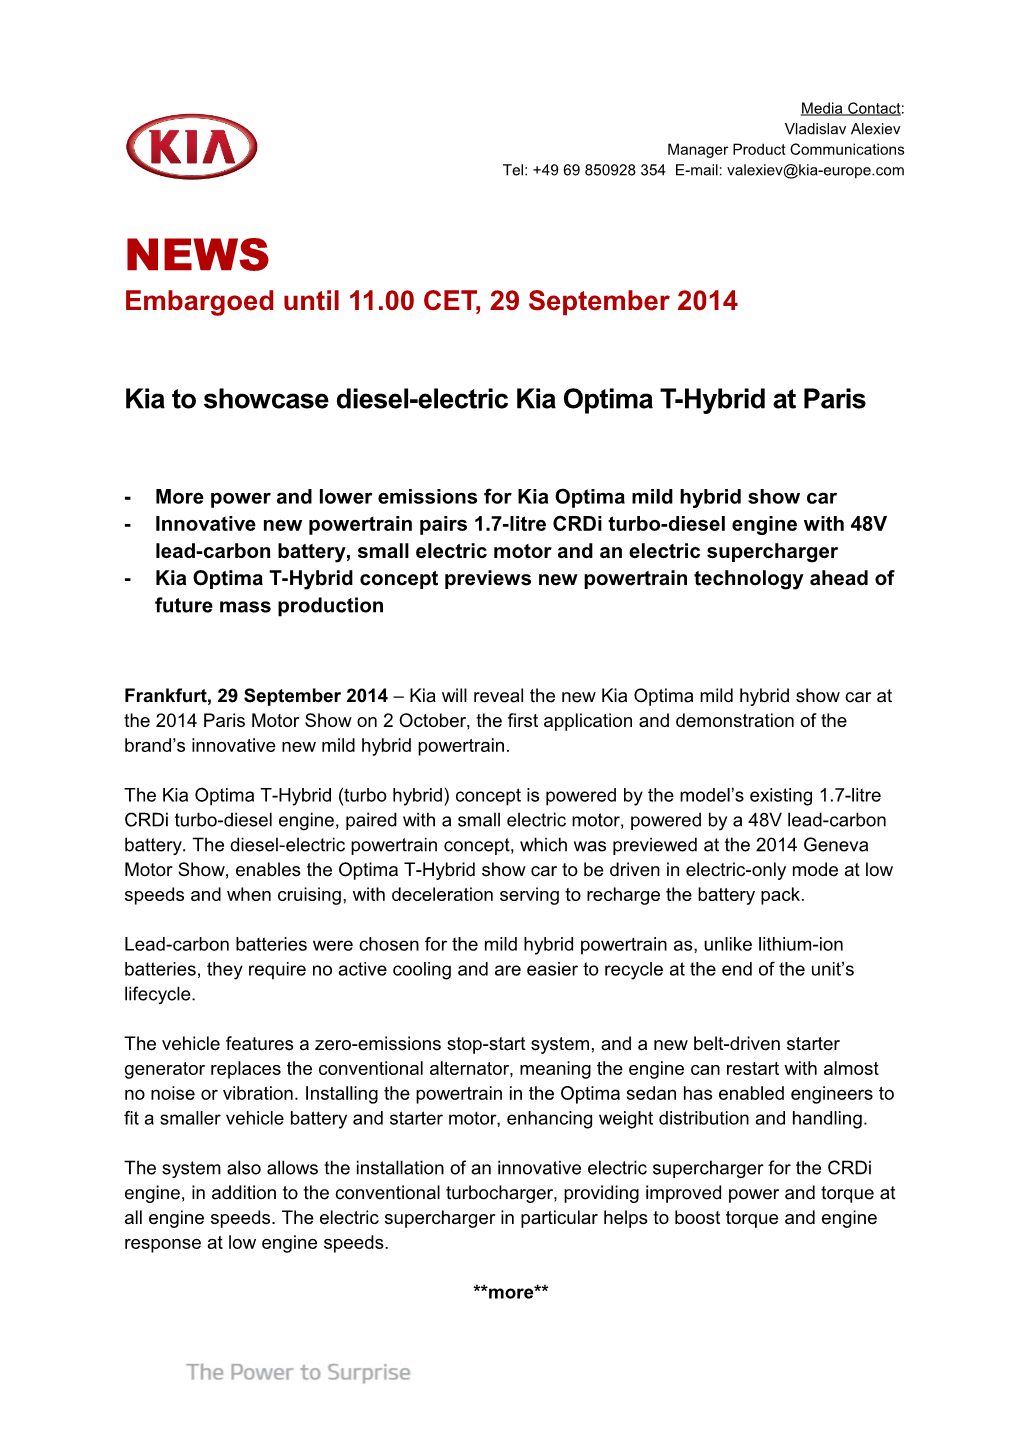 Kia to Showcase Diesel-Electric Kia Optima T-Hybrid at Paris